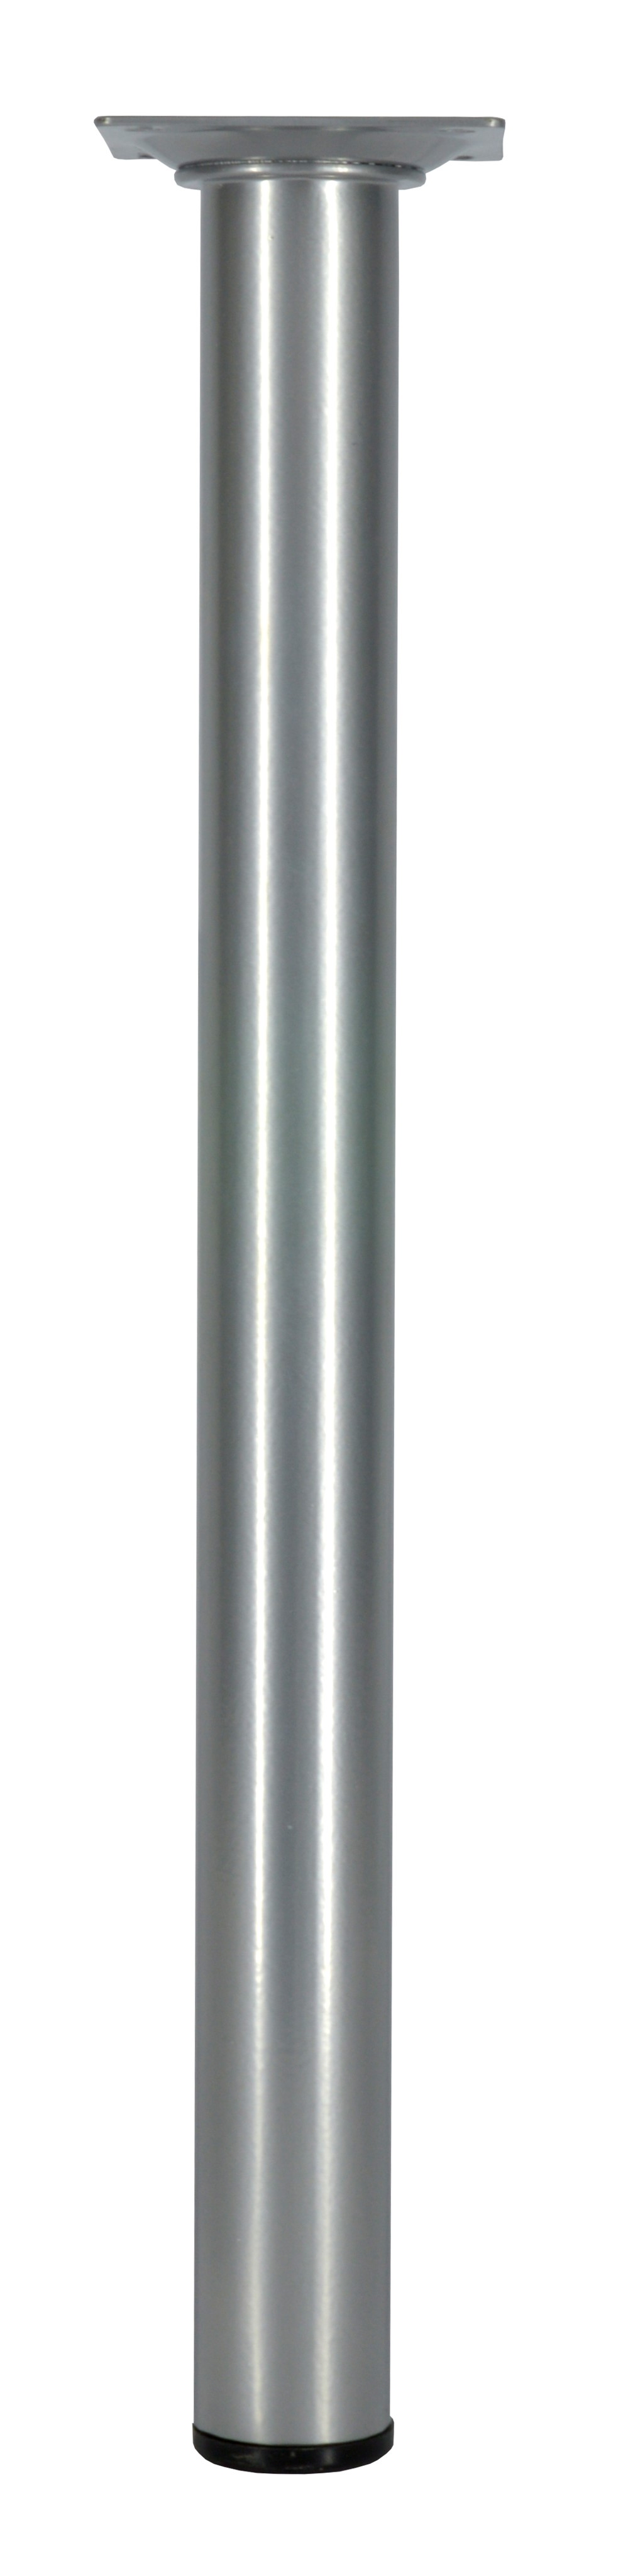 Pied rond. Platine 60 x 60 mm Ø30 mm Acier gris aluminium H350 mm - CIME